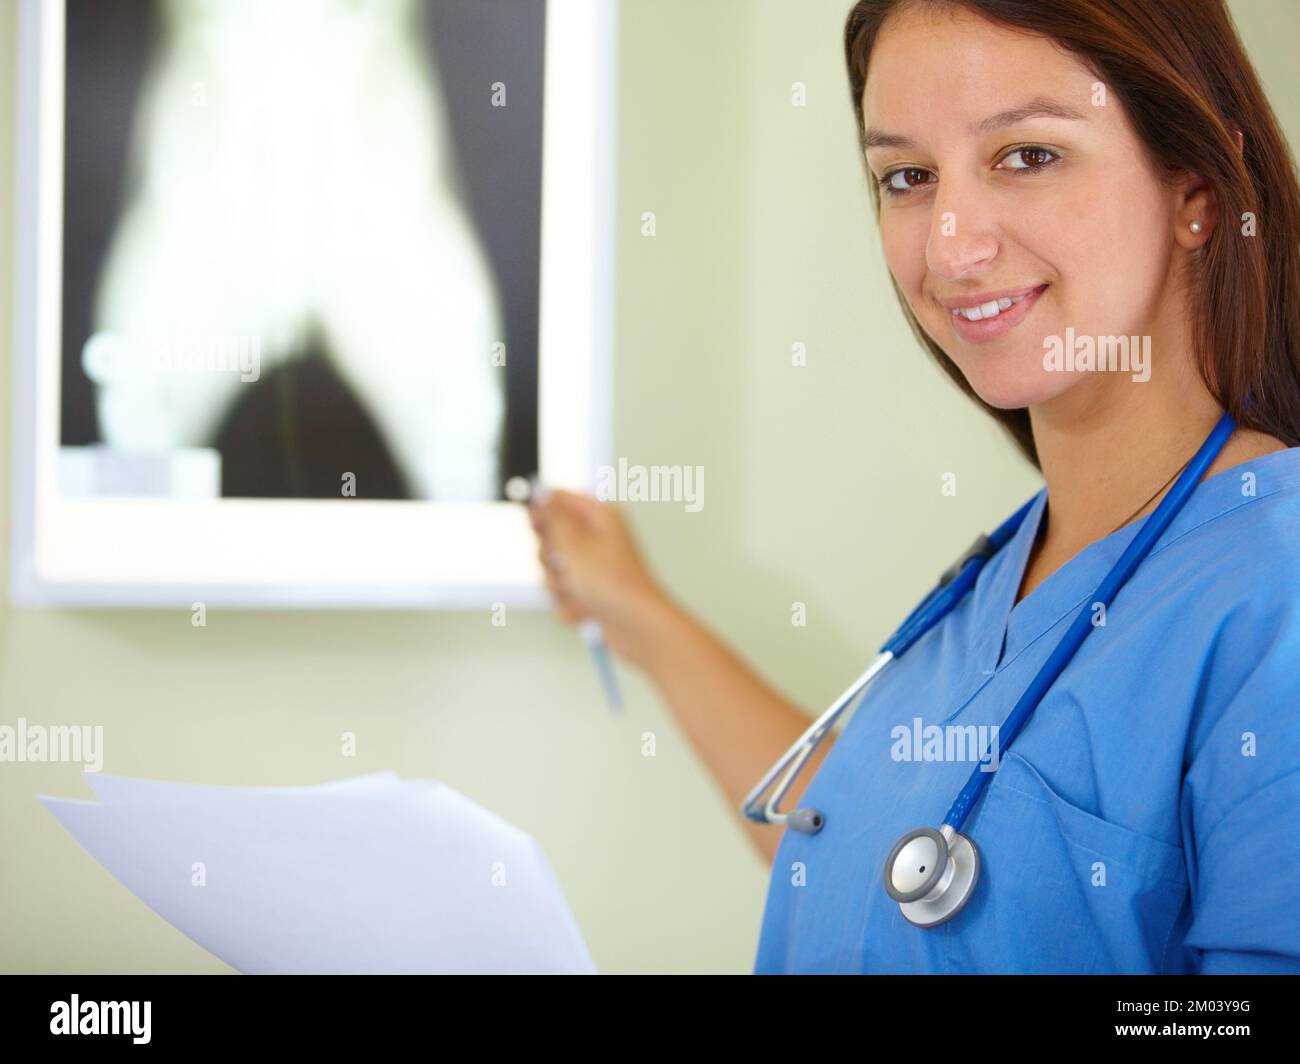 Ich vertraue meiner Arbeit. Porträt einer jungen Frau in Kittel, die auf ein Röntgenbild zeigt. Stockfoto